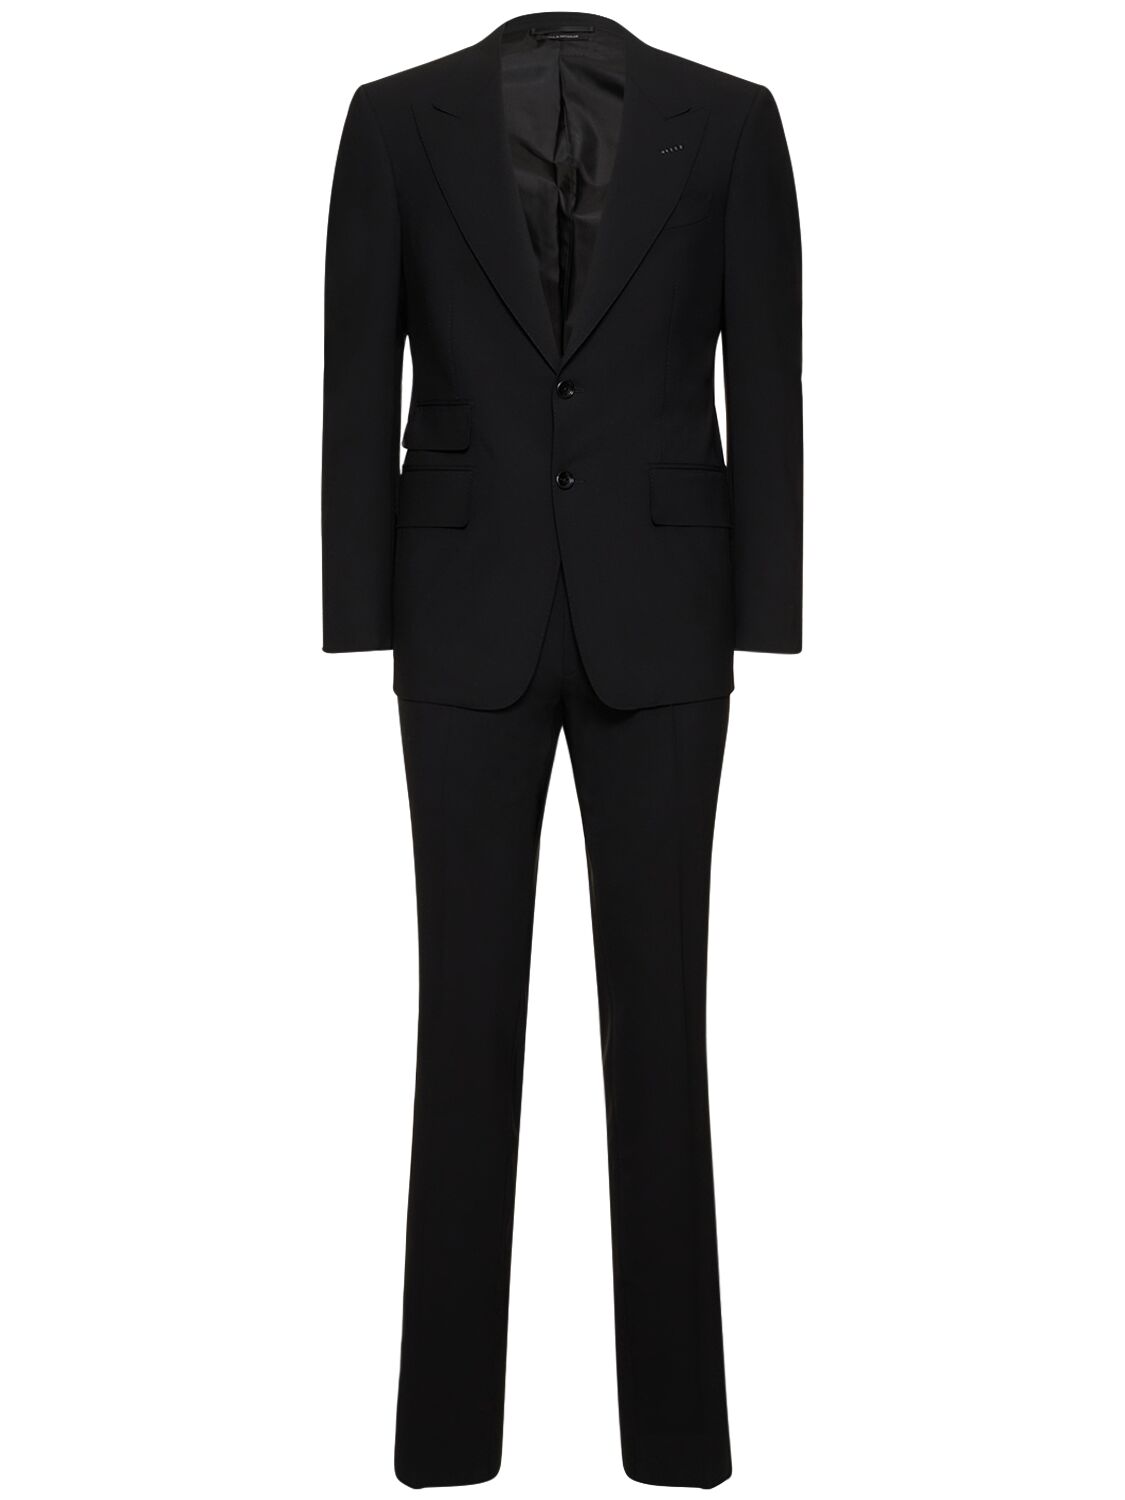 Shelton Stretch Wool Plain Weave Suit – MEN > CLOTHING > SUITS